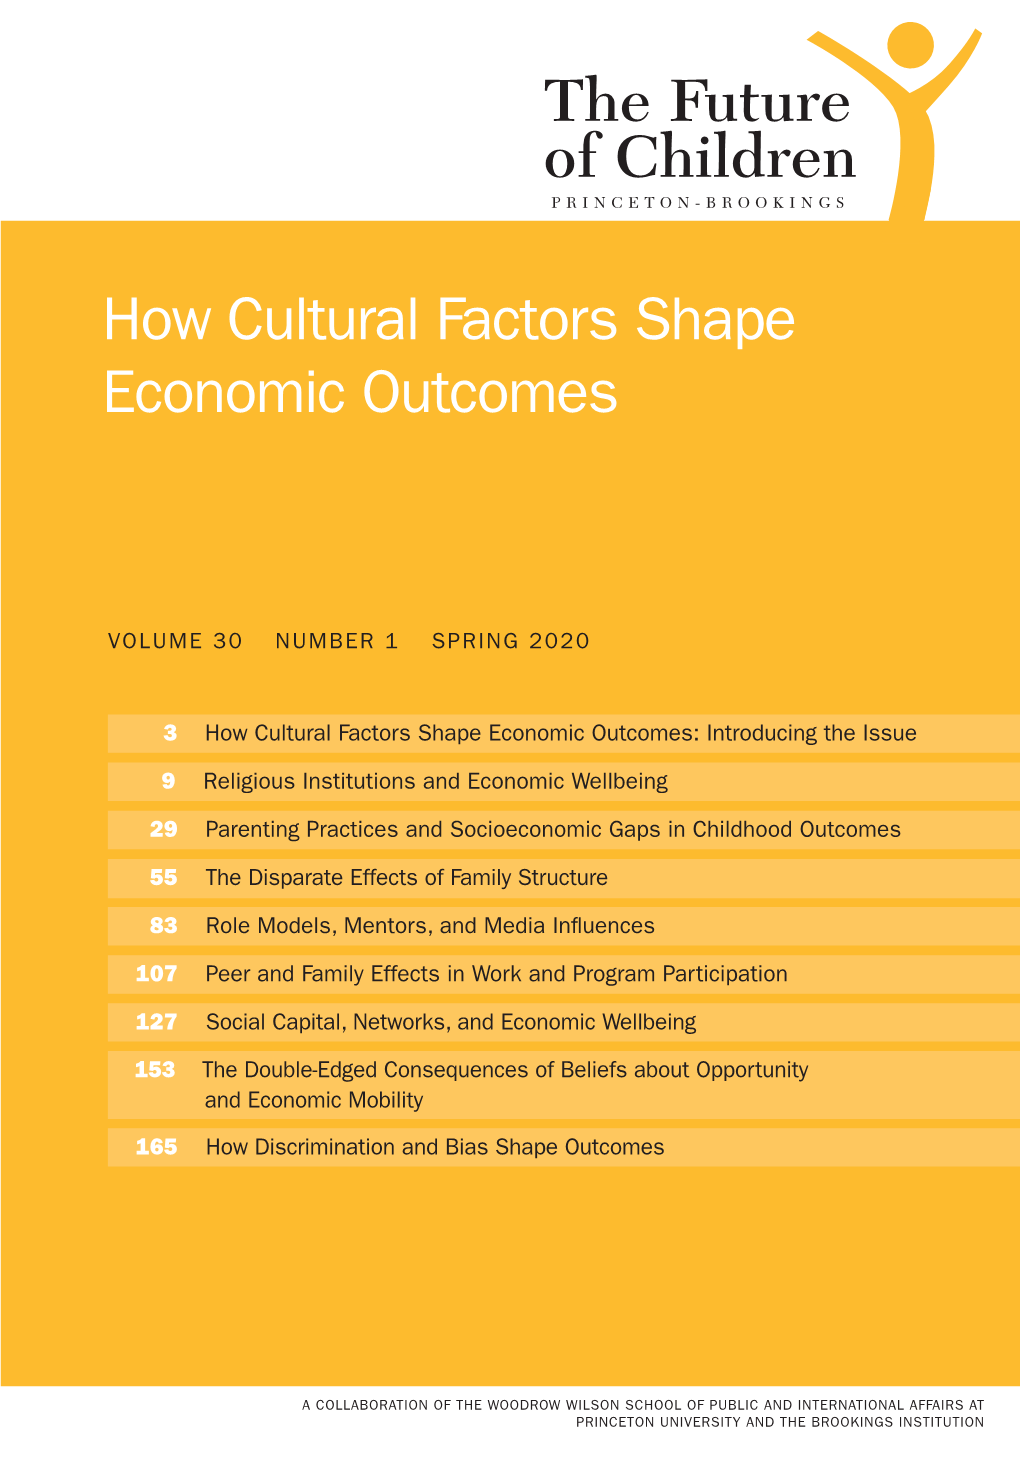 How Cultural Factors Shape Economic Outcomes